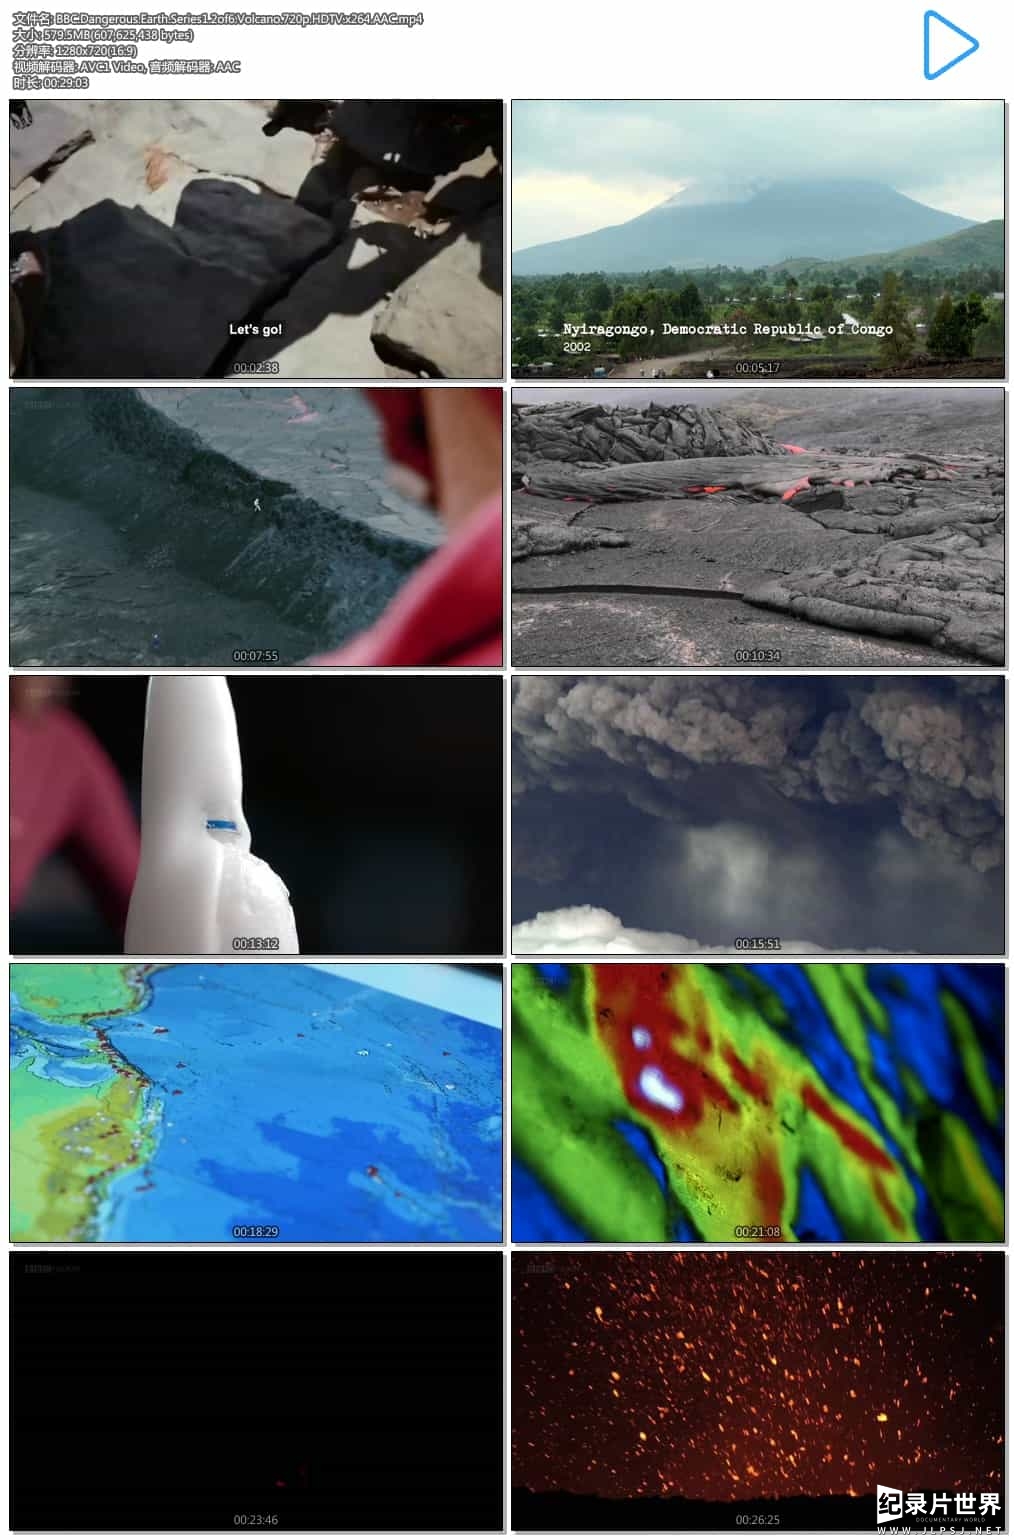 精选系列/BBC纪录片《危险的地球 Dangerous Earth 2016》 第1季 全6集